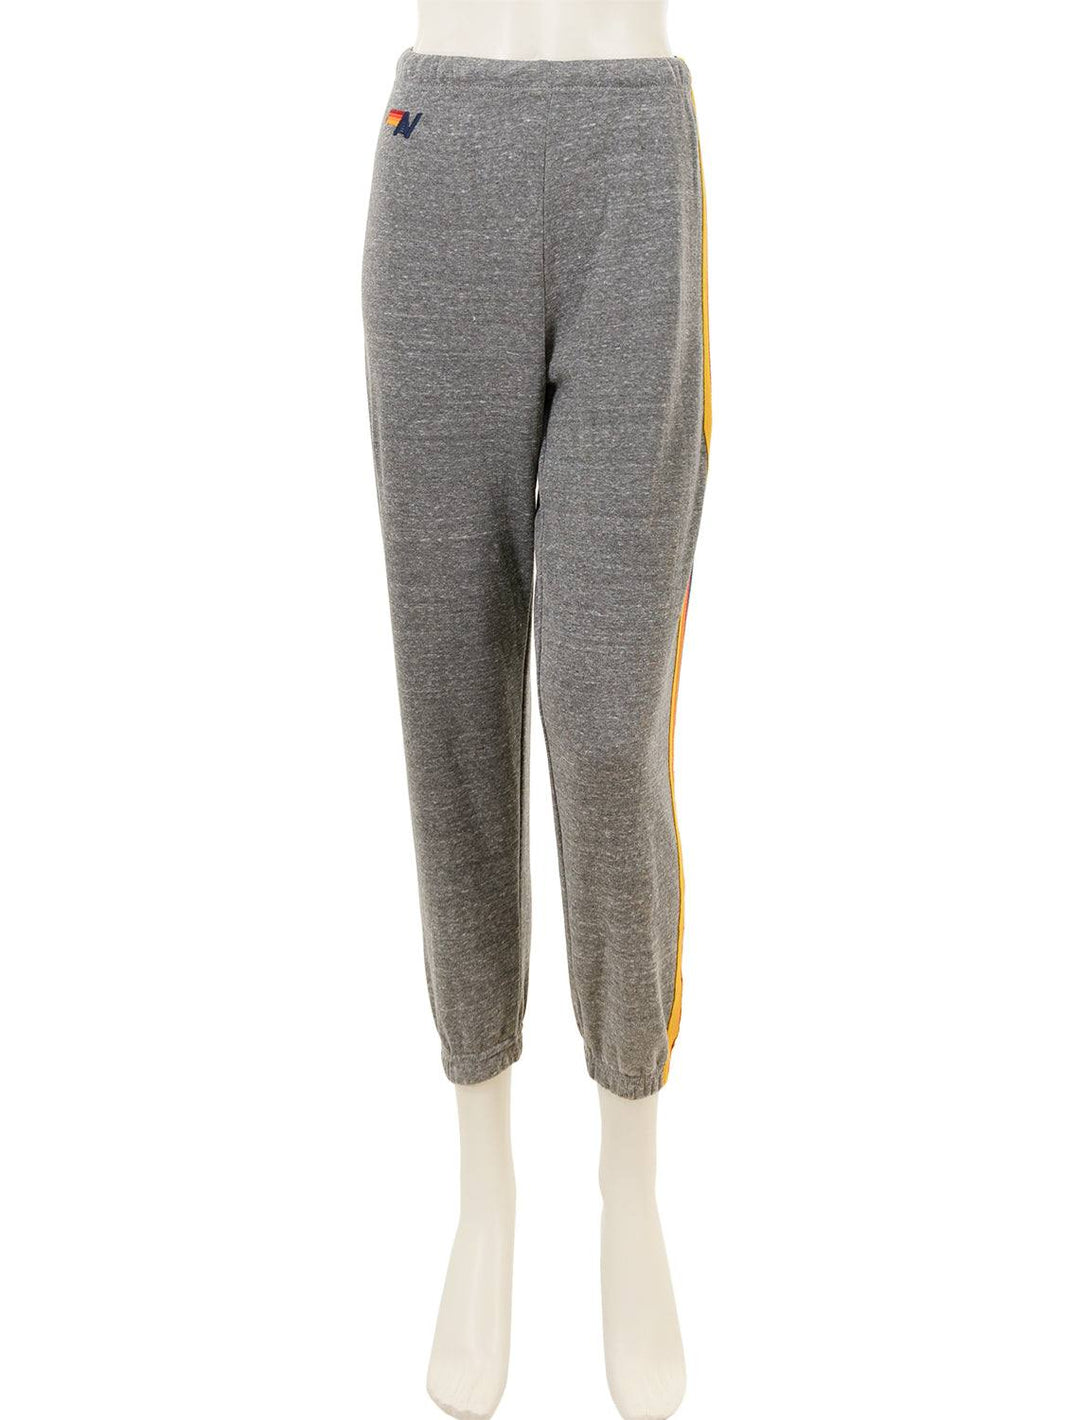 5 stripe womens sweatpants in heather grey – Twigs